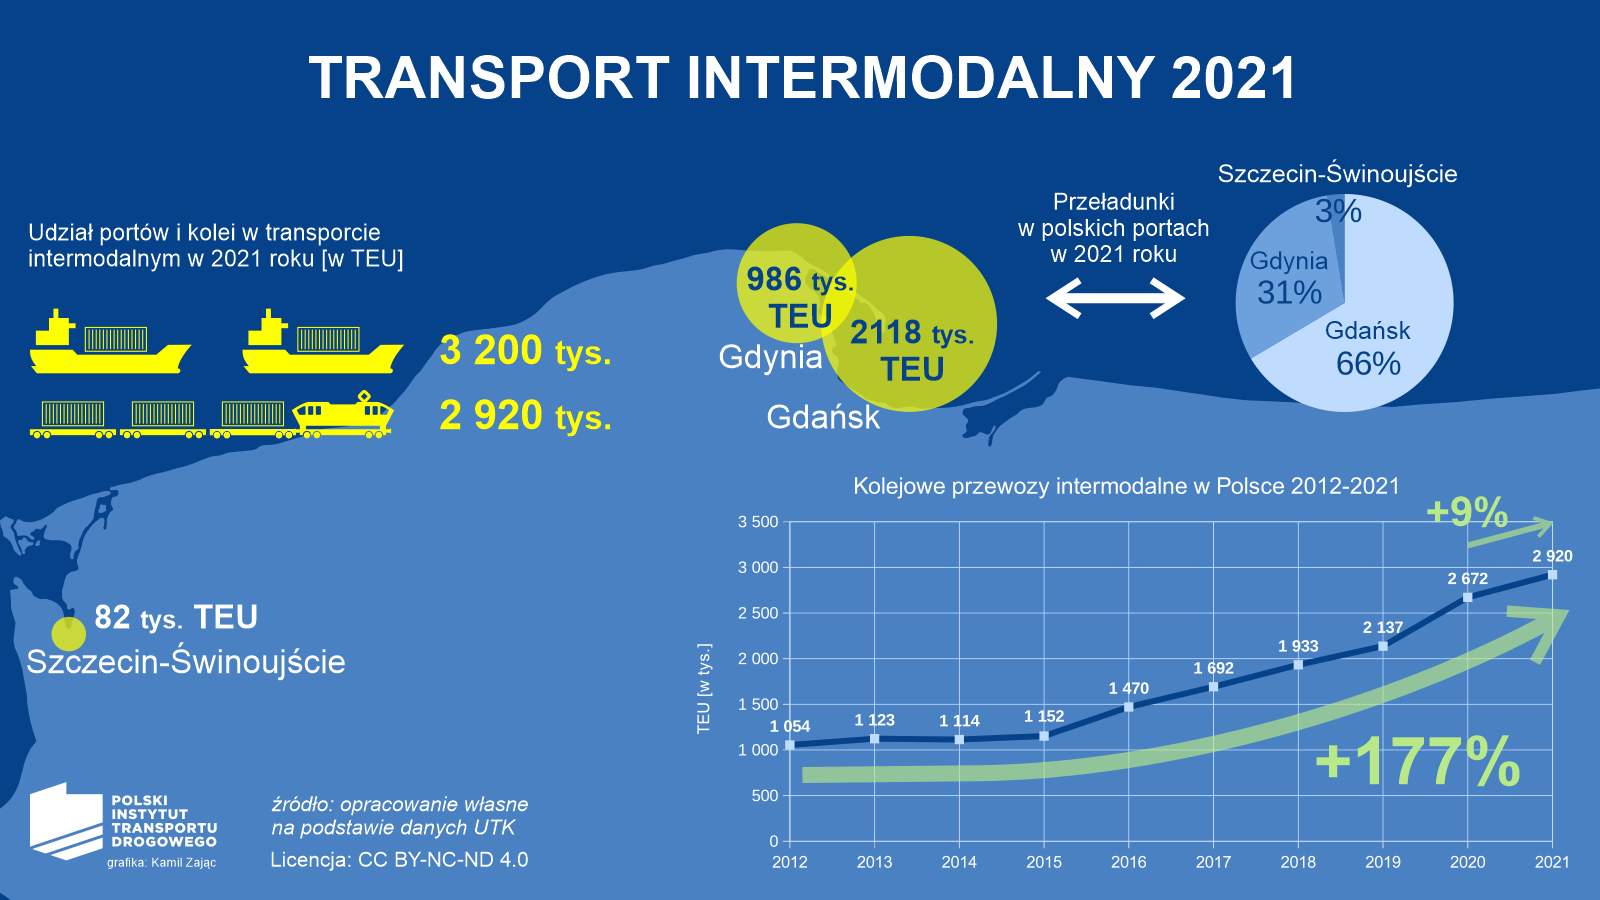 Wykres PITD prezentujący transport intermodalny w 2021 roku, a także kolejowe przewozy intermodalne od roku 2012